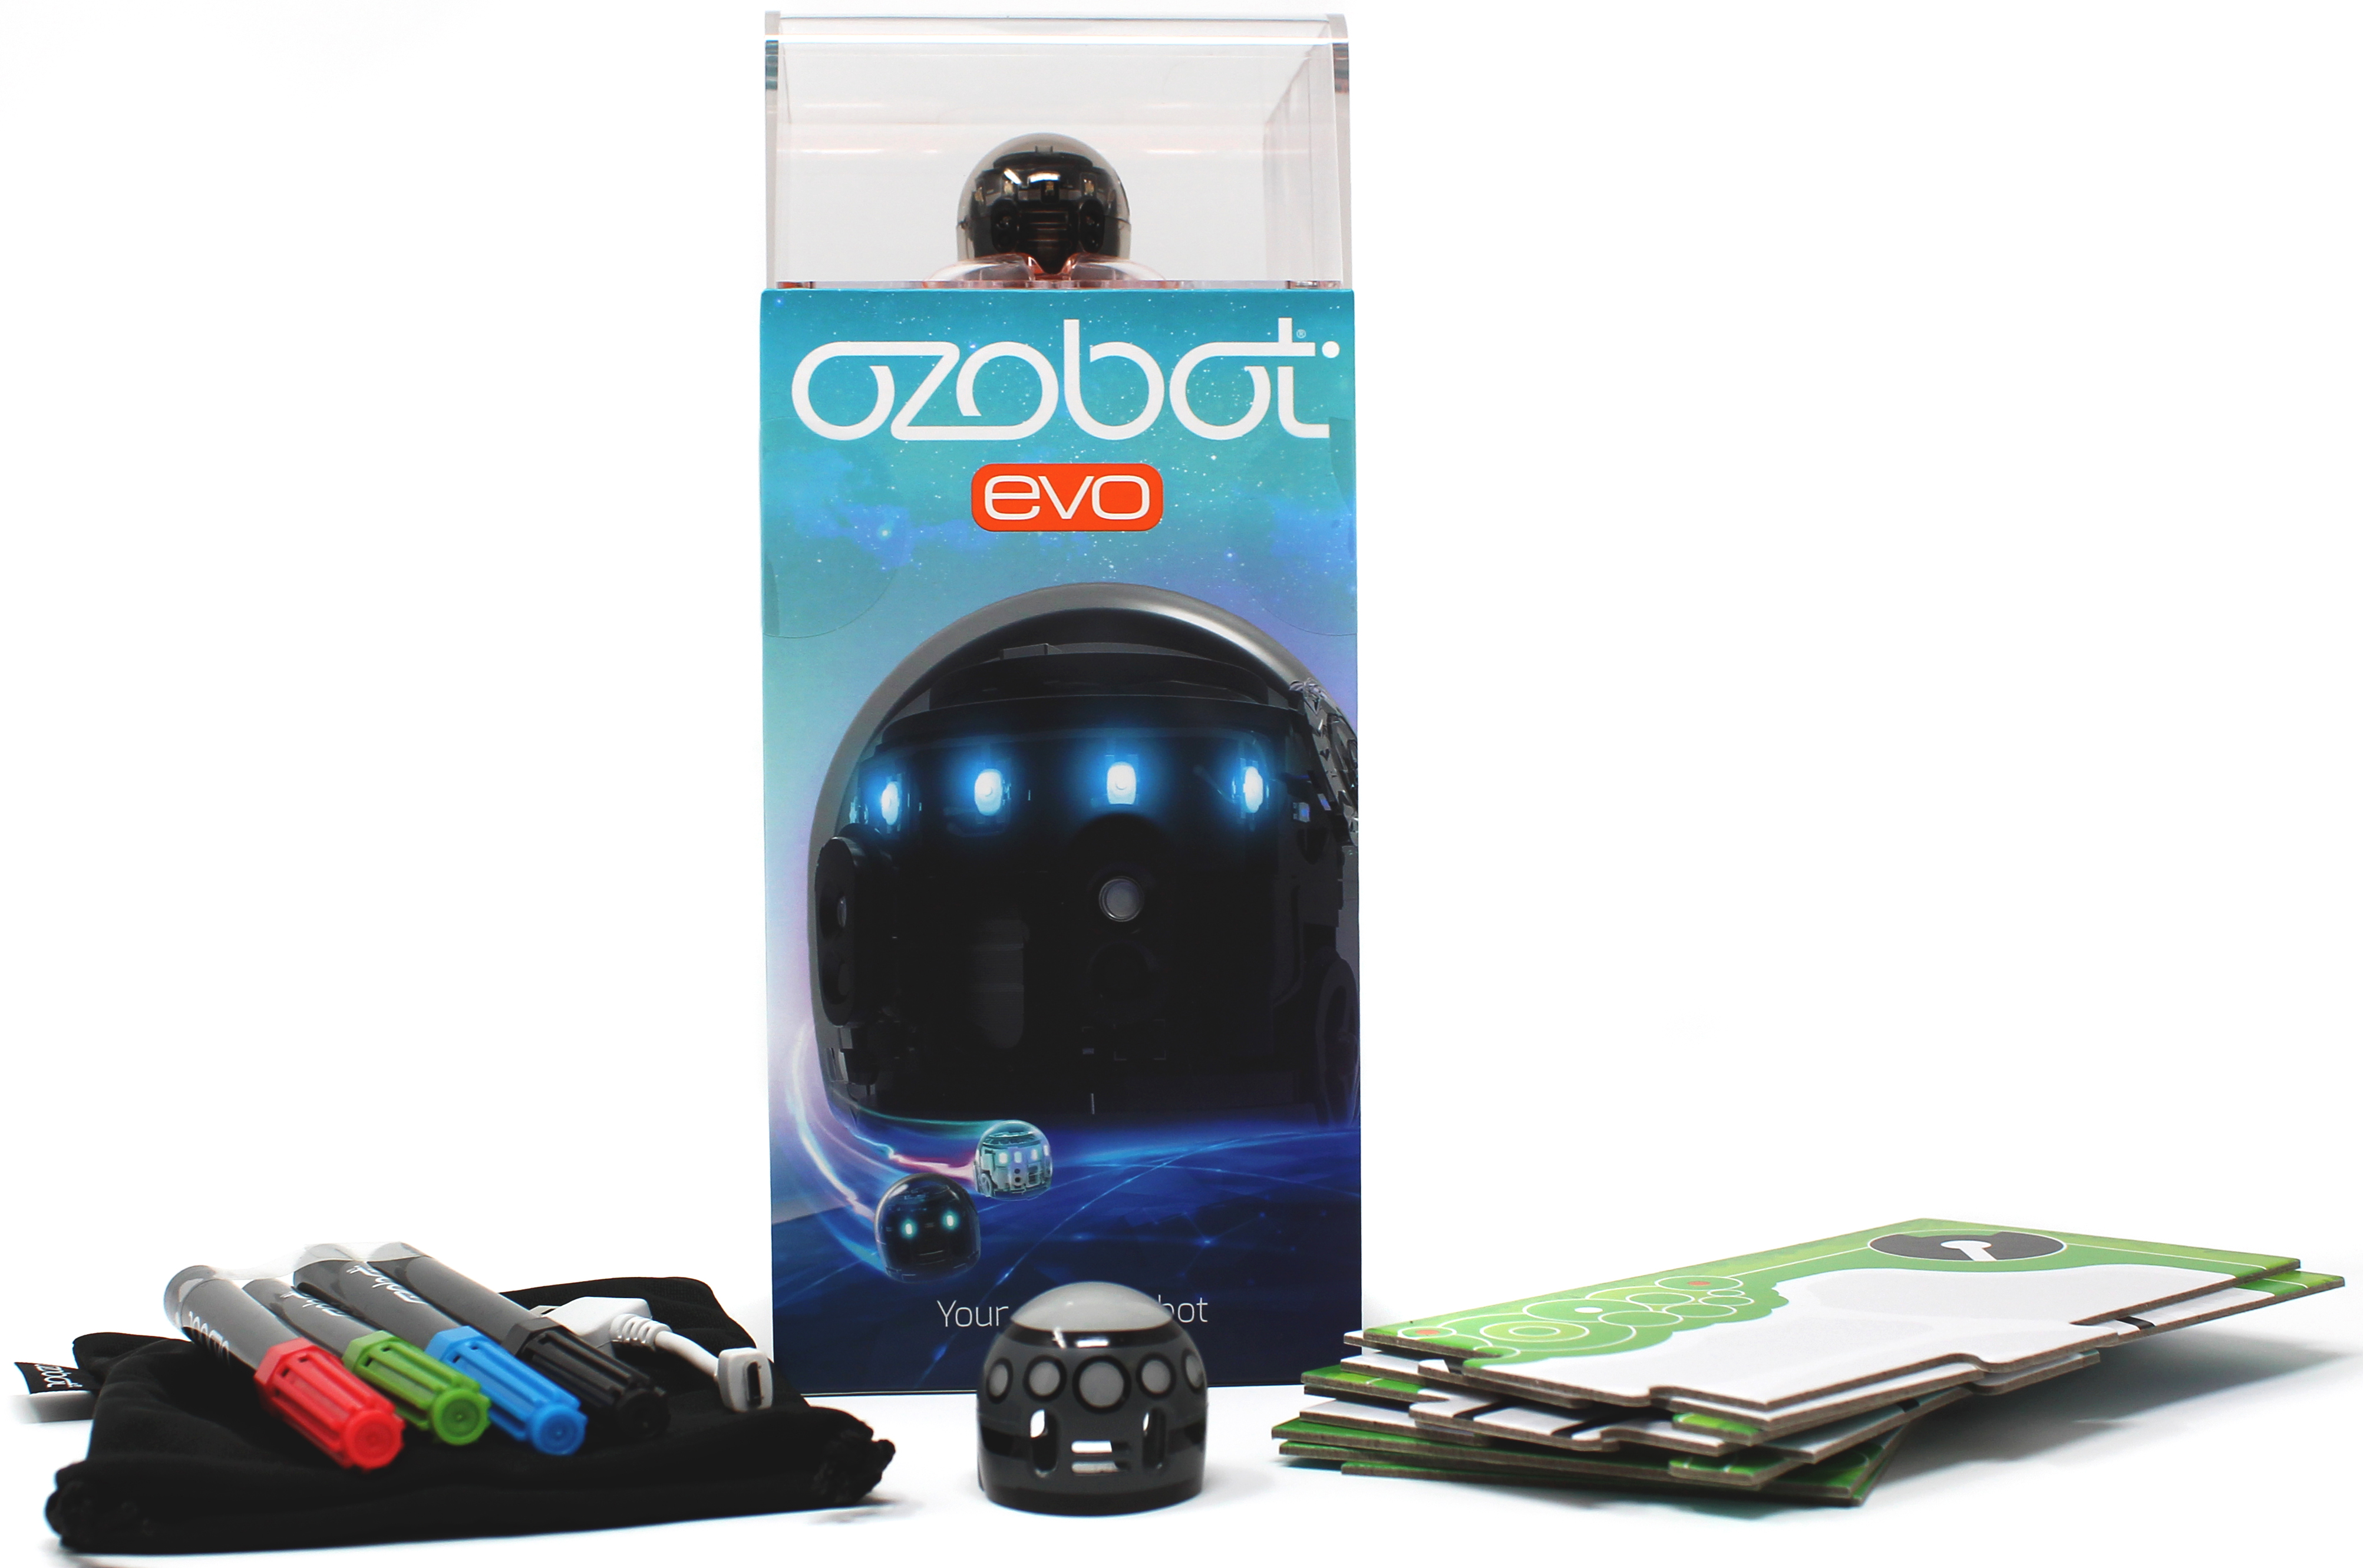 фото Игрушечный робот Ozobot Evo Black Продвинутый набор (OZO-070601-02), черный робот